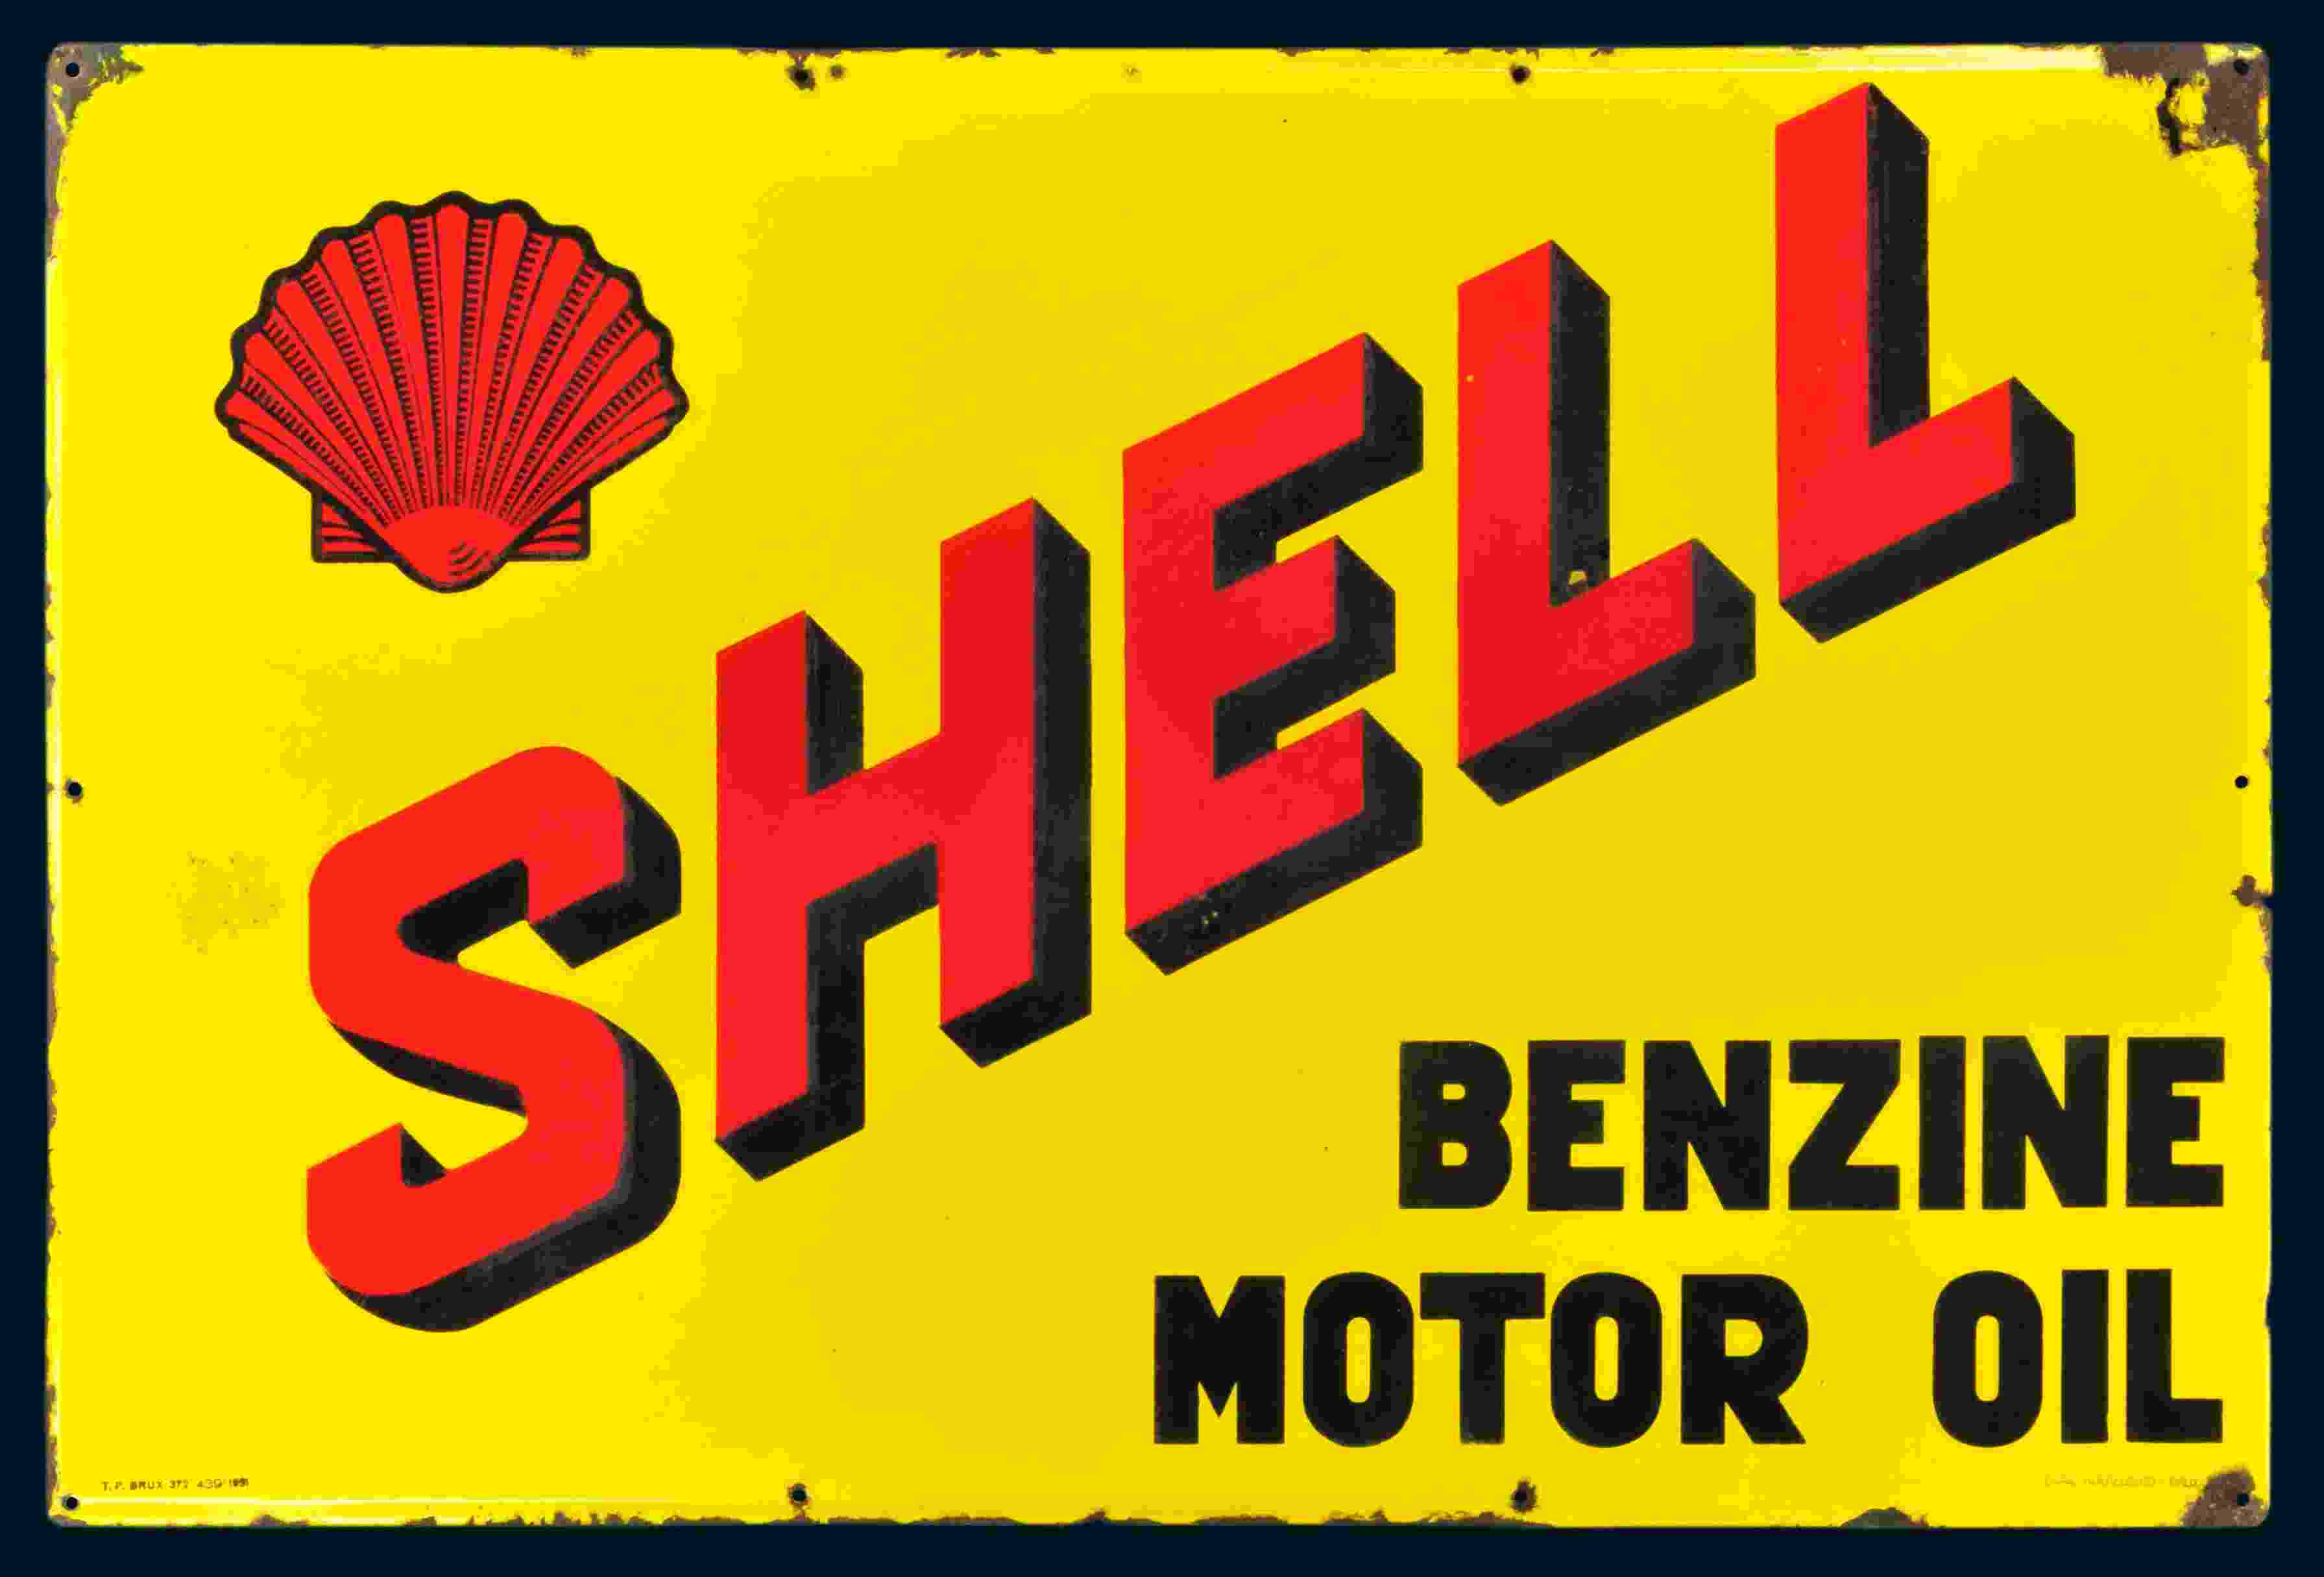 Shell Benzine Motor Oil 